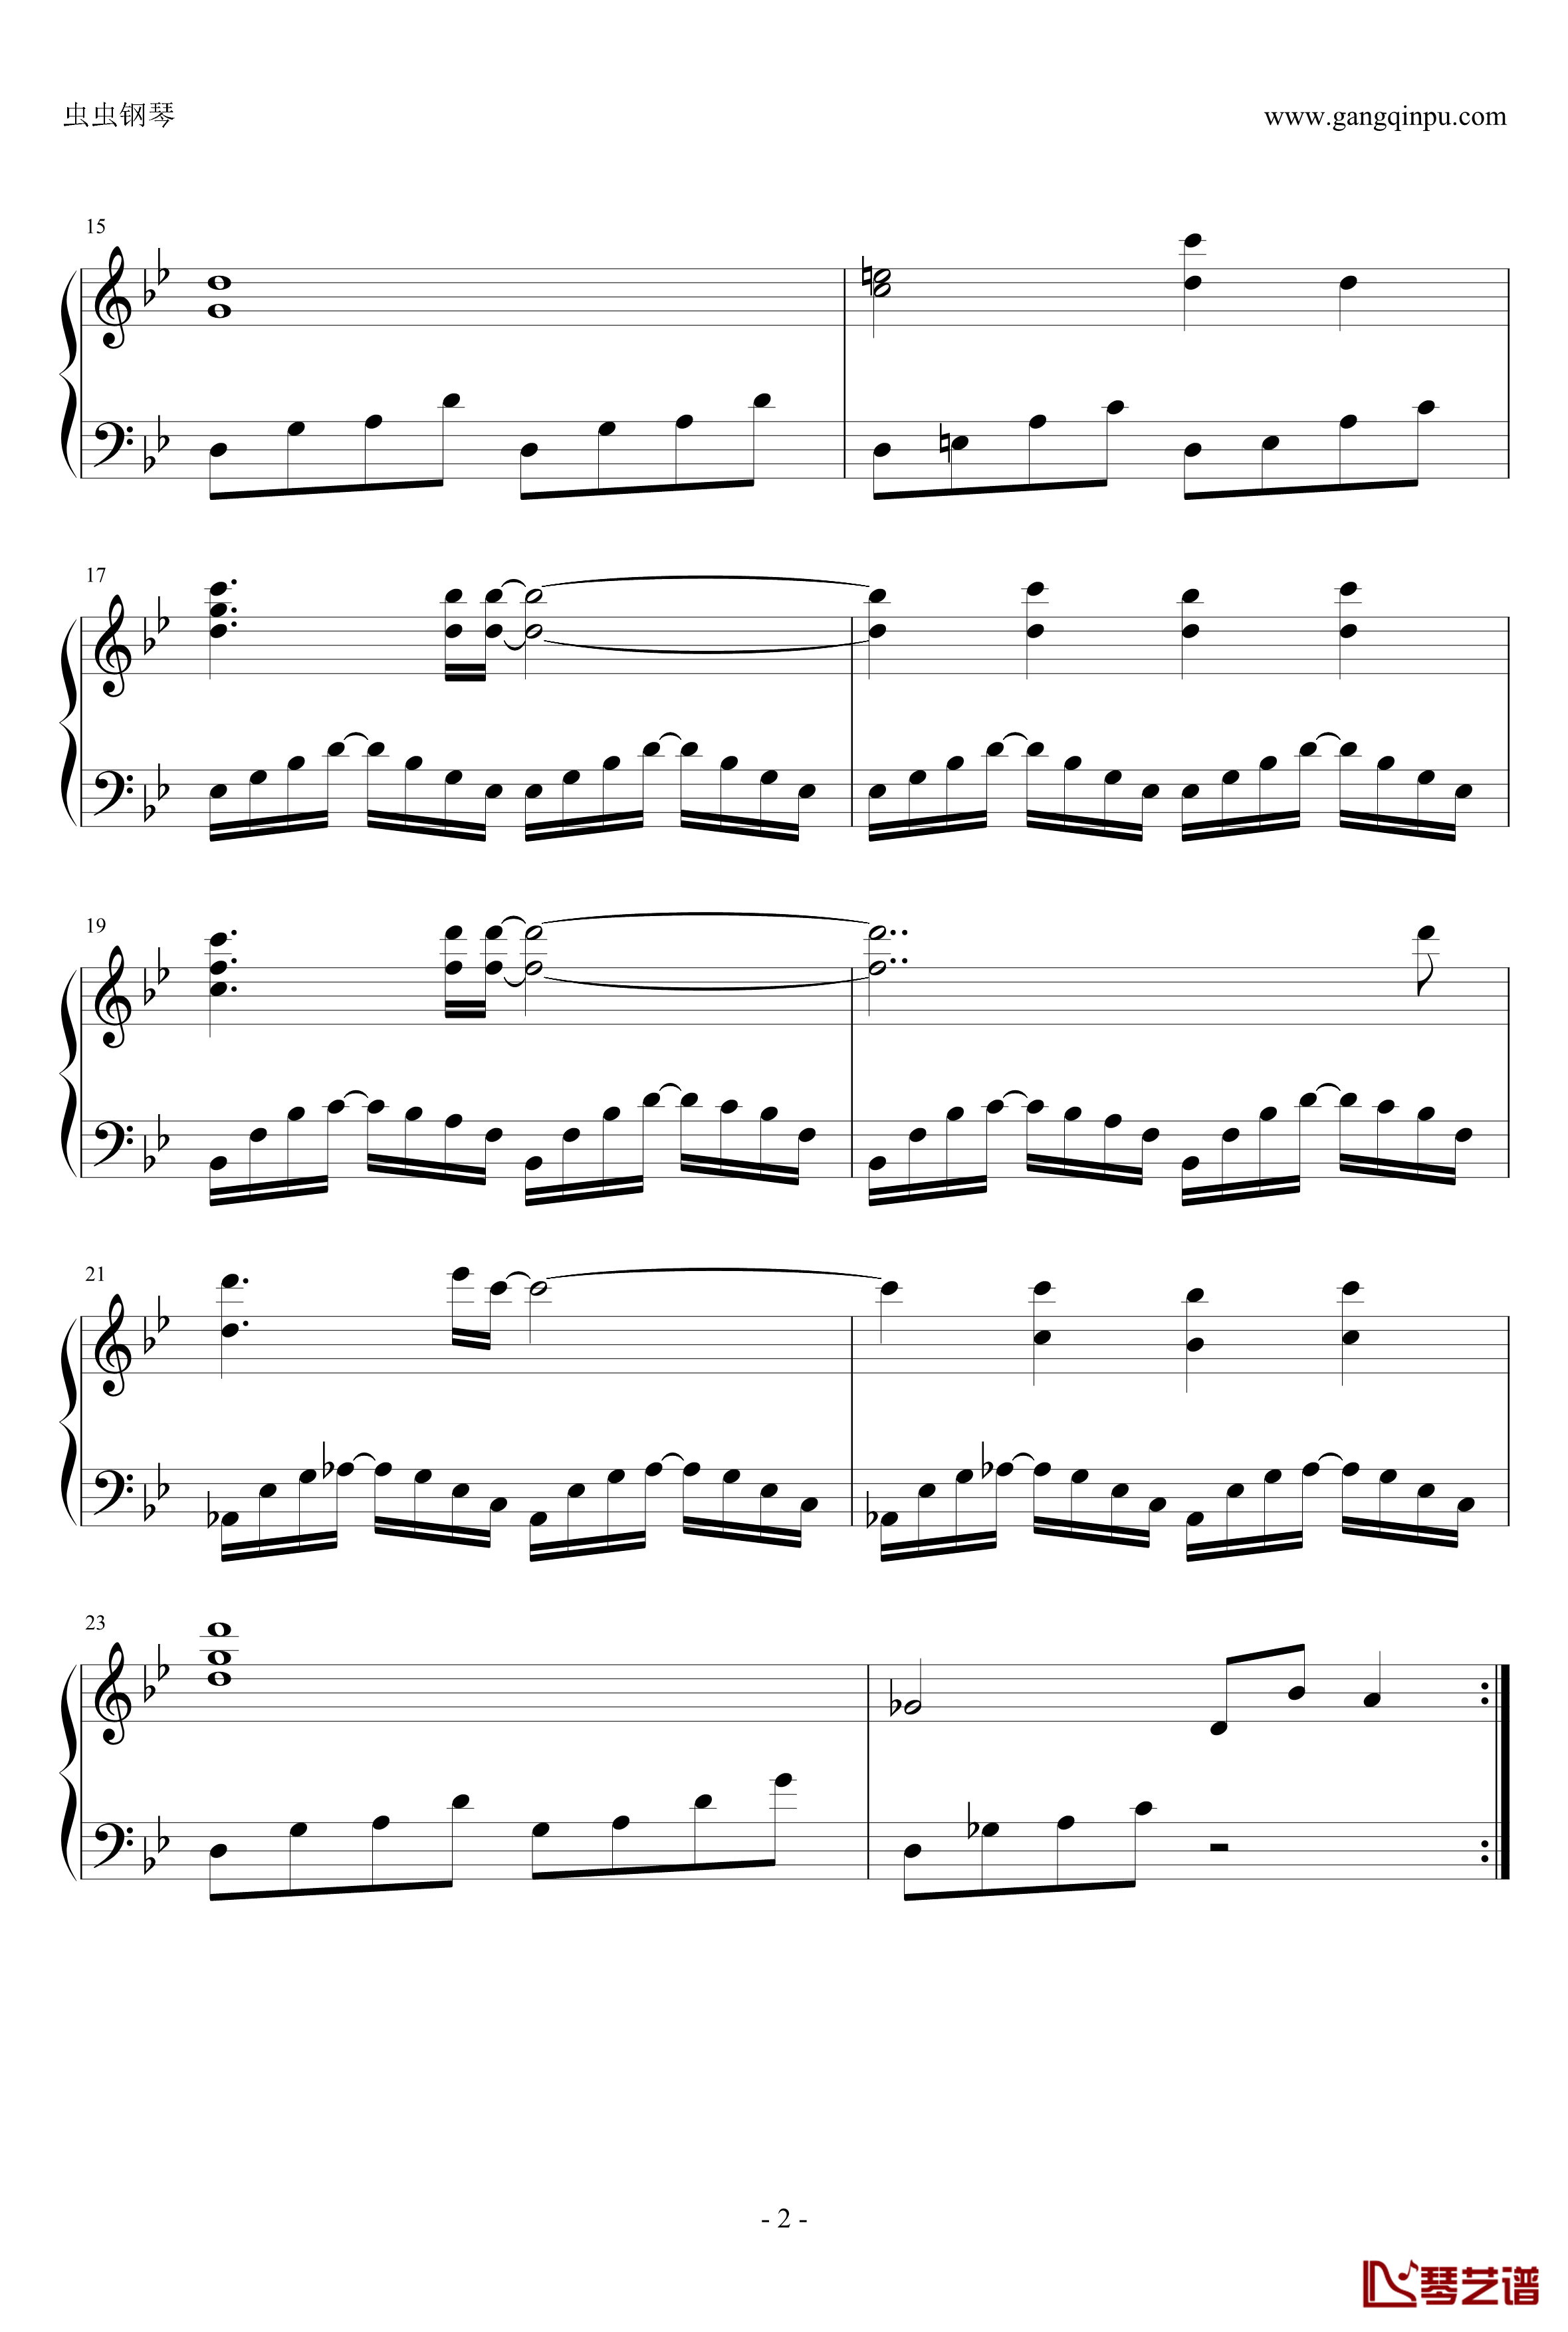 魔想志津香主题曲钢琴谱 - 交叉、点-兰斯32